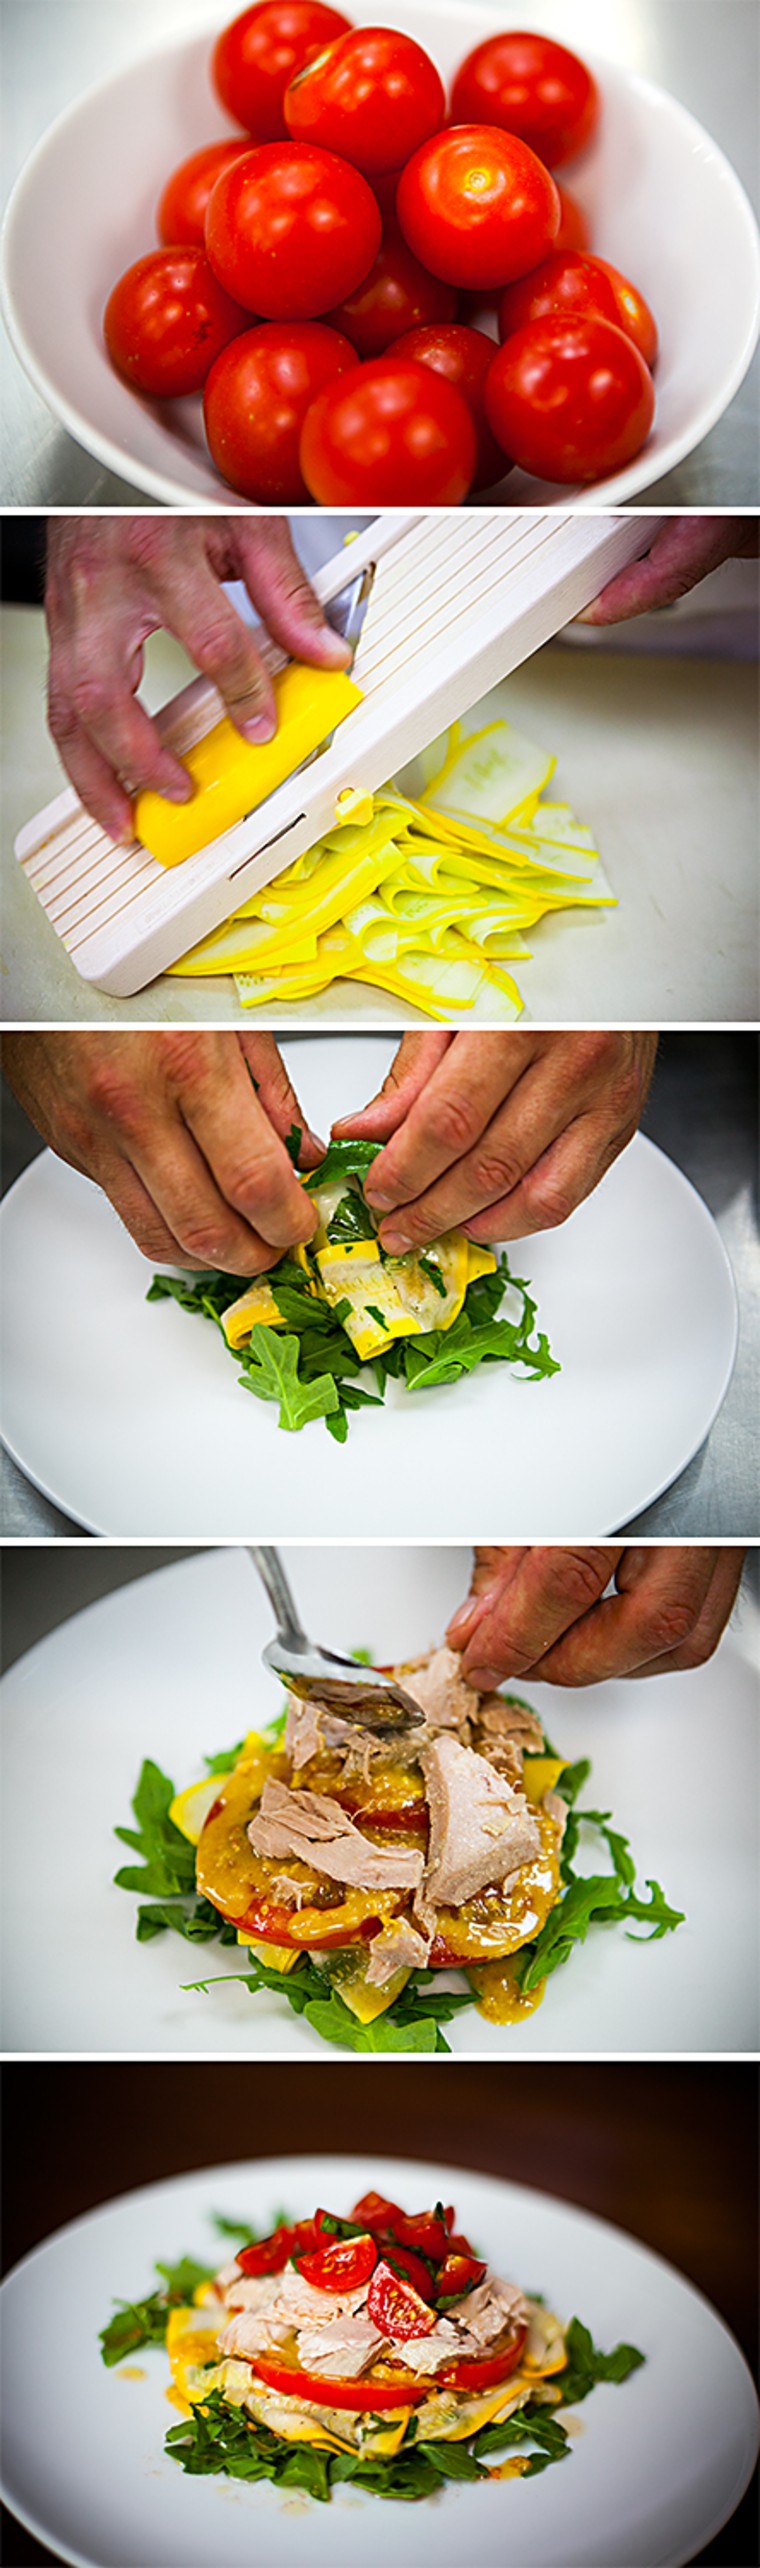 No-cook tuna, tomato and zucchini napoleon recipe by chef Ben Pollinger